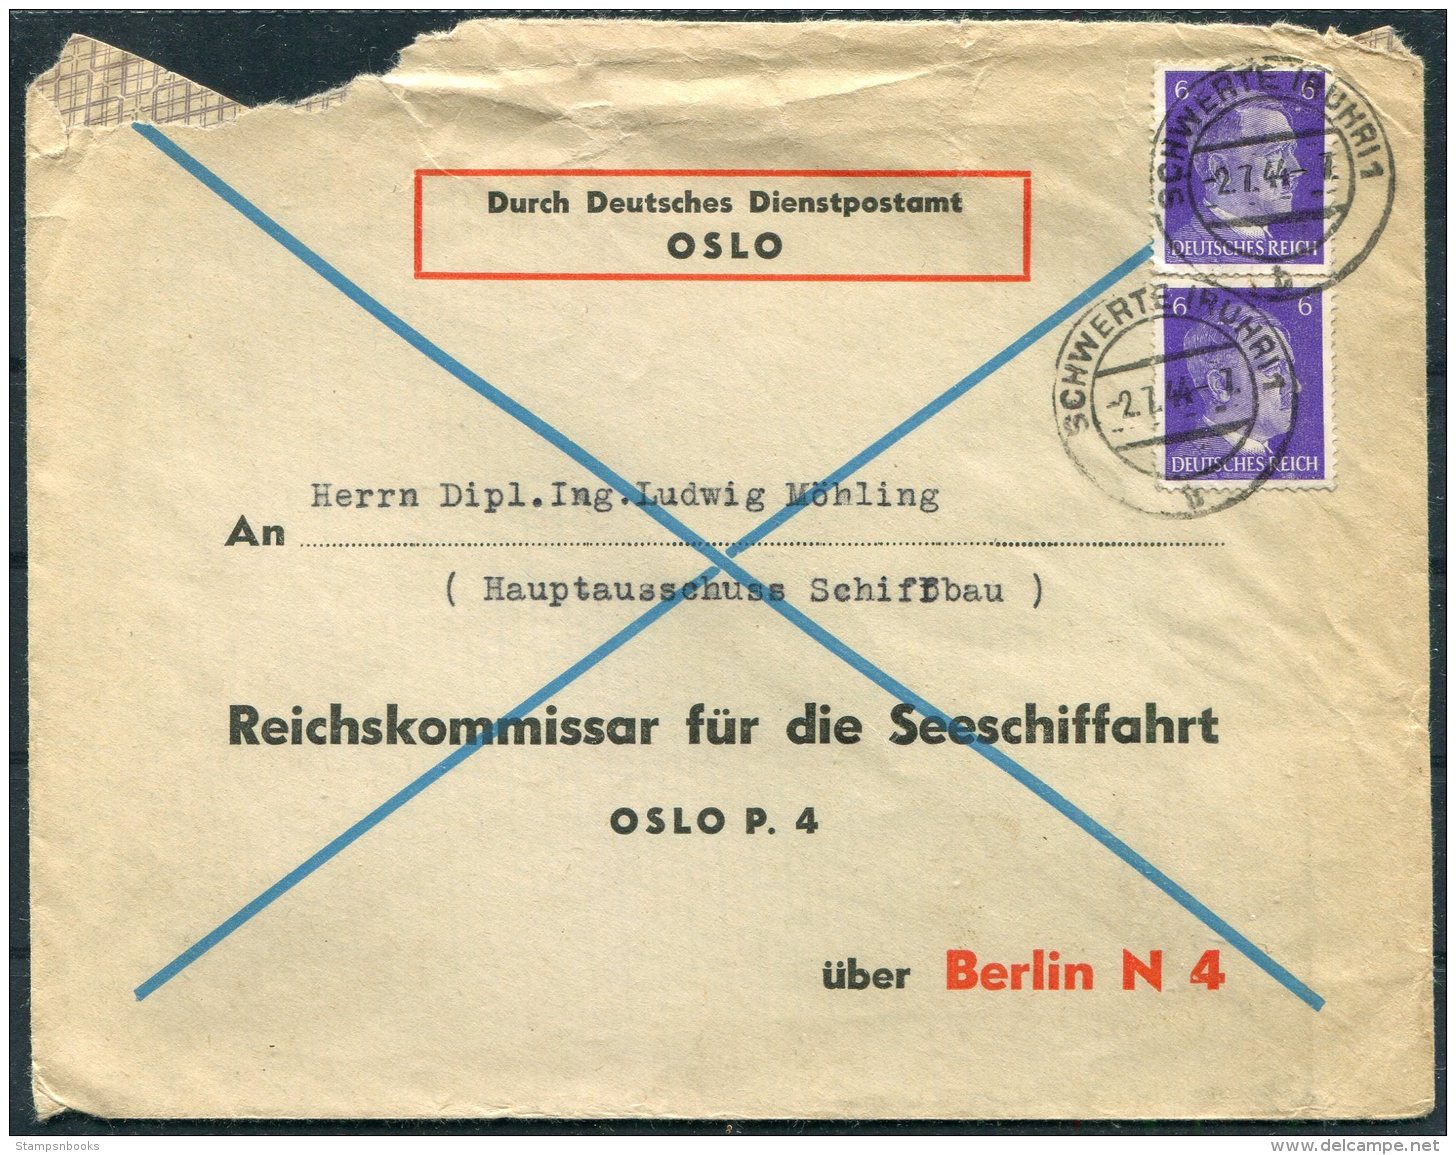 1944 Norway Germany, Durch Deutsches Dientspostamt DDP Cover - Oslo P4 Reichskommissar Fur Die Seeschiffahrt - Briefe U. Dokumente